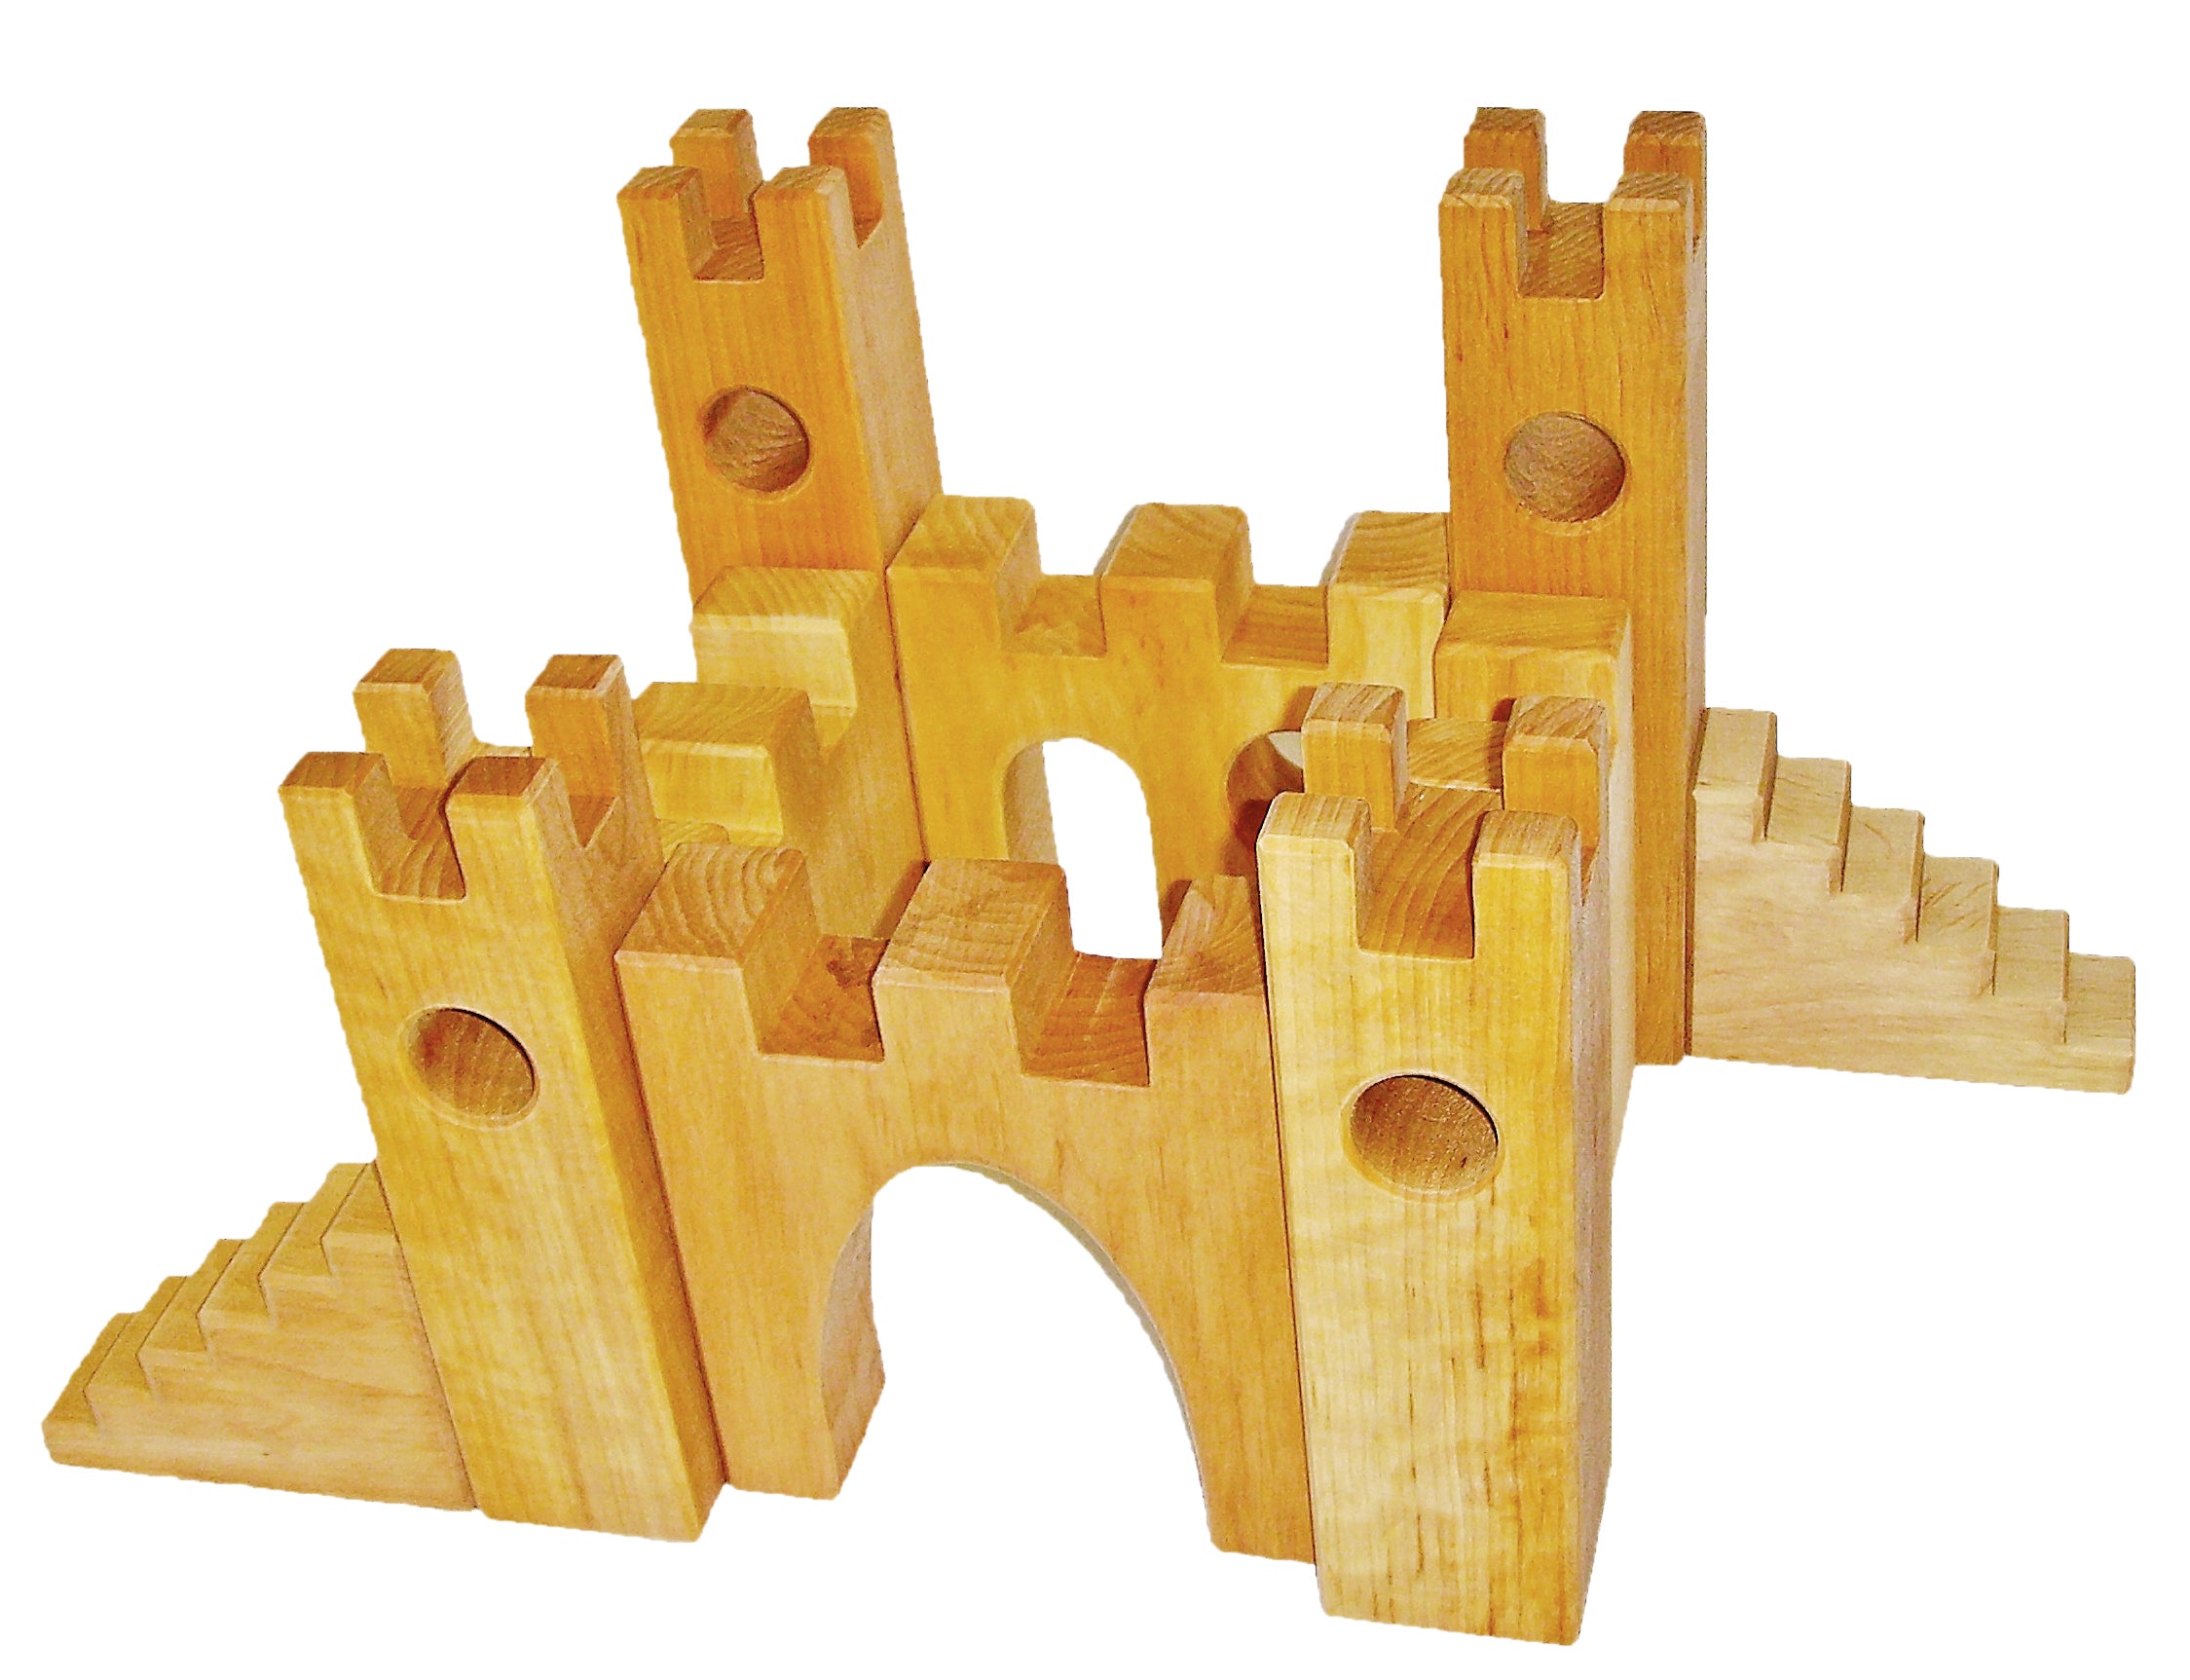 Bauspiel Knights Castle 10 Piece Wooden Block Set | Children of the Wild